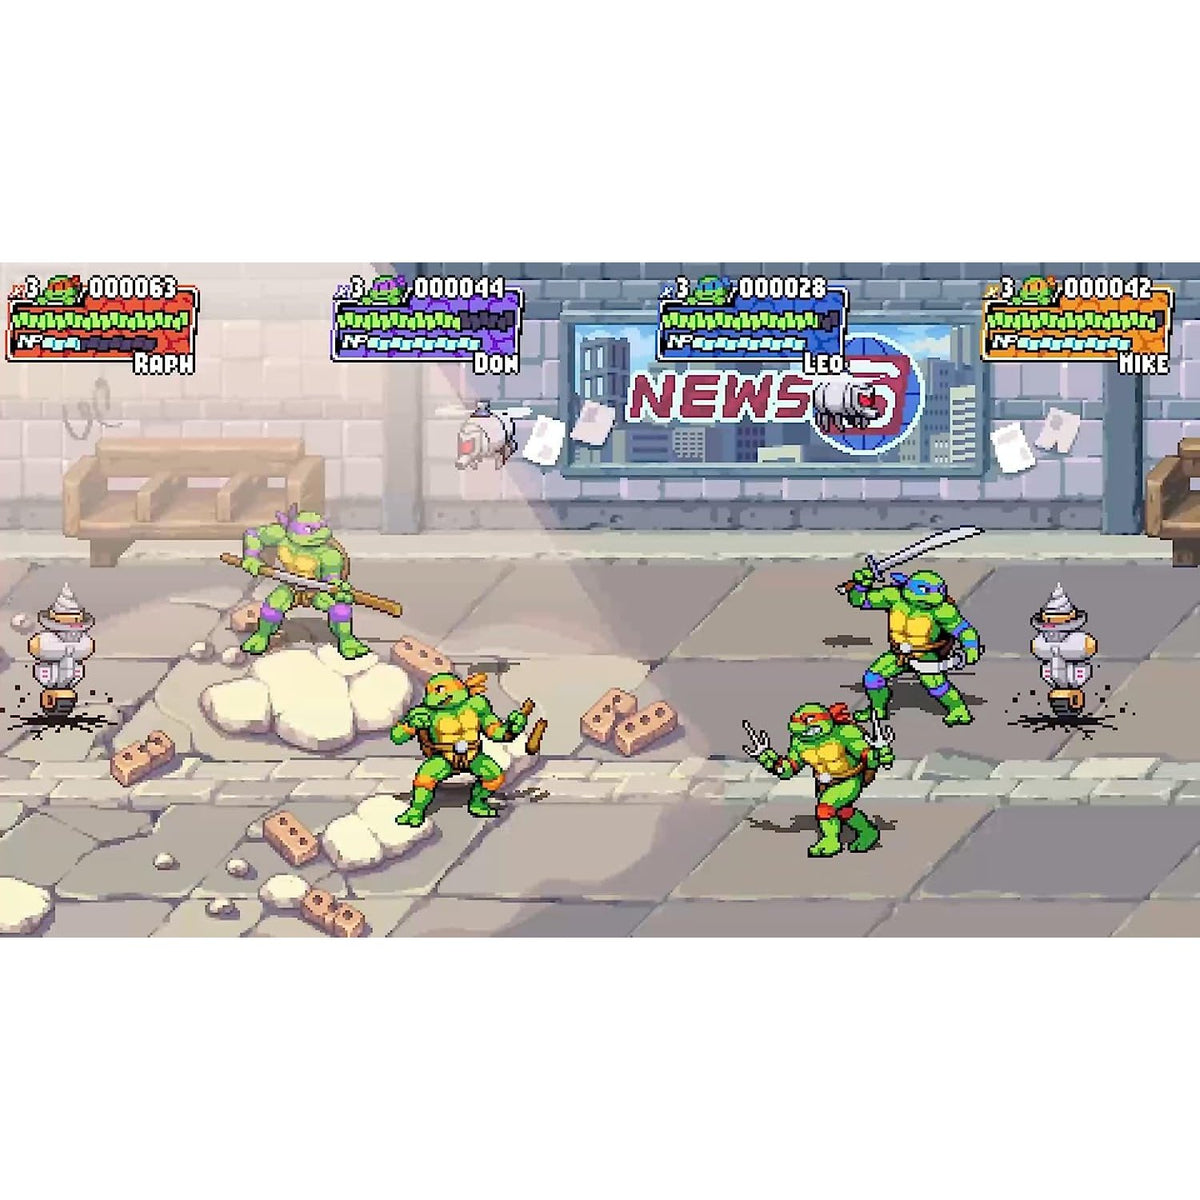 Teenage Mutant Ninja Turtles: Shredder's Revenge Sony Playstation 5